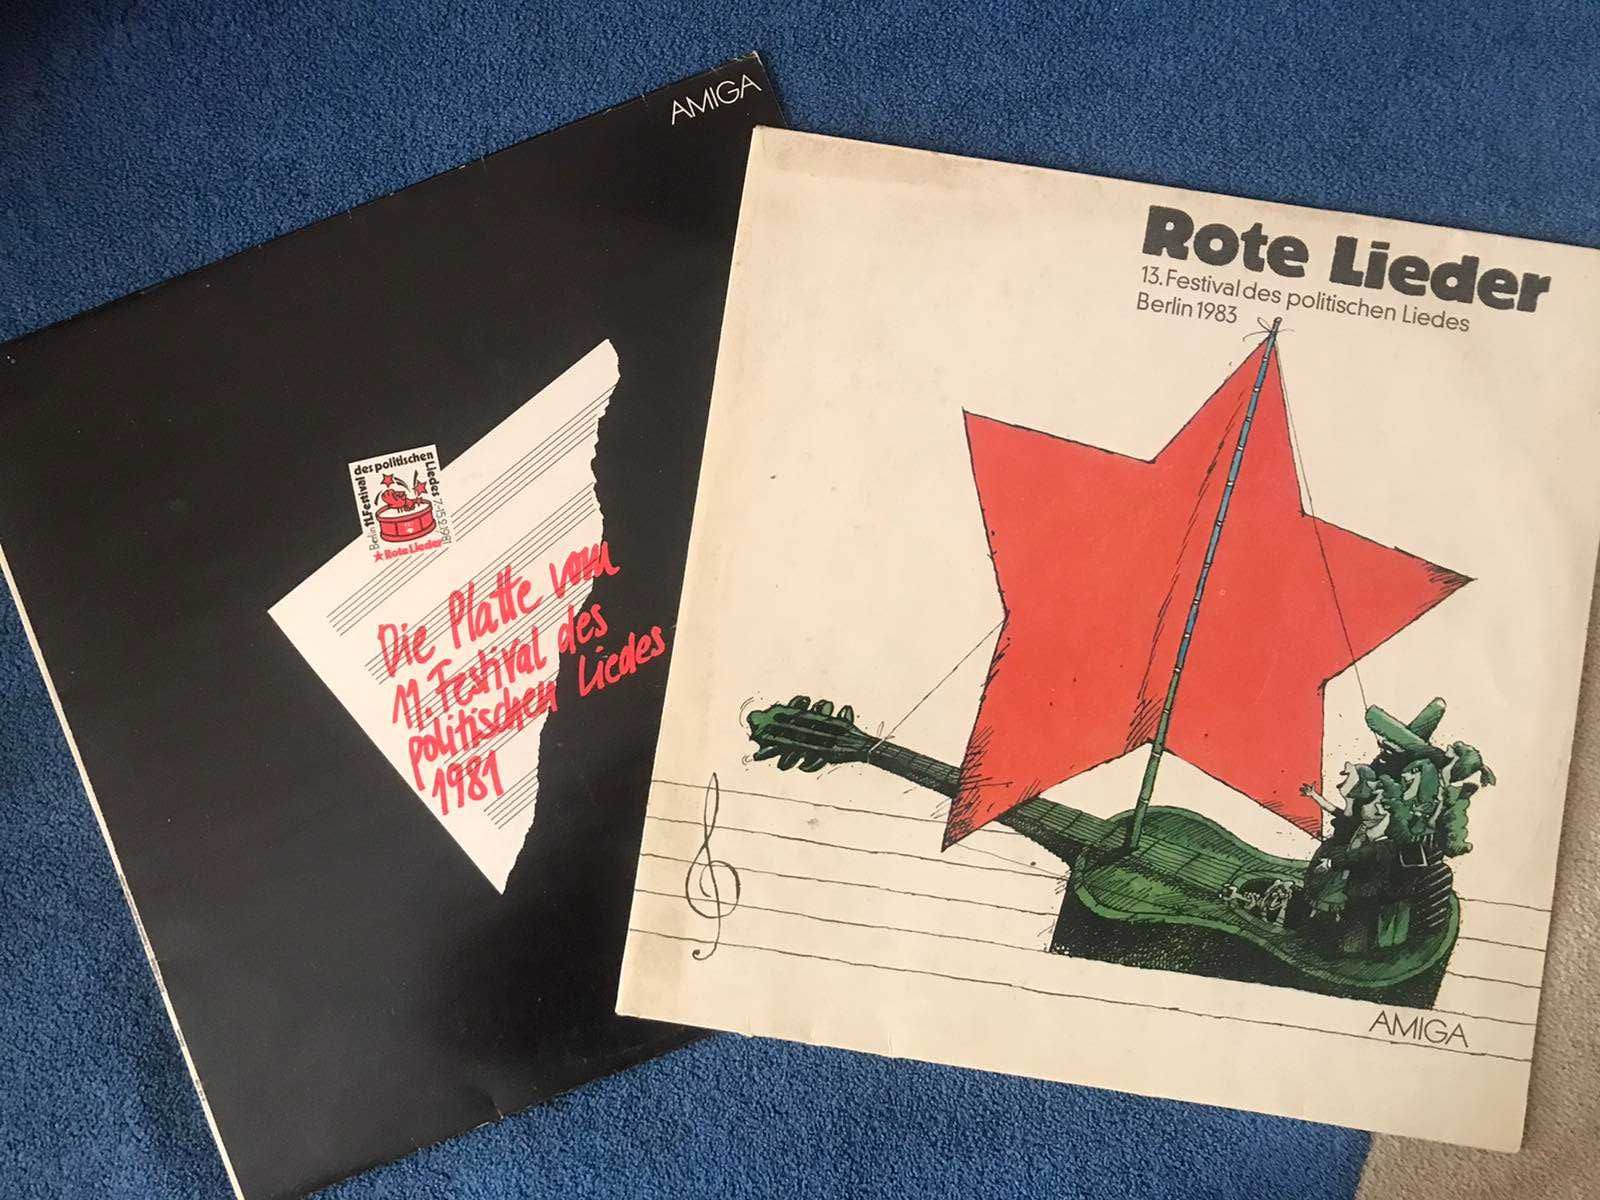 Rote Lieder  Фестиваль политических песен  Берлин  1981 и 1983 гг.